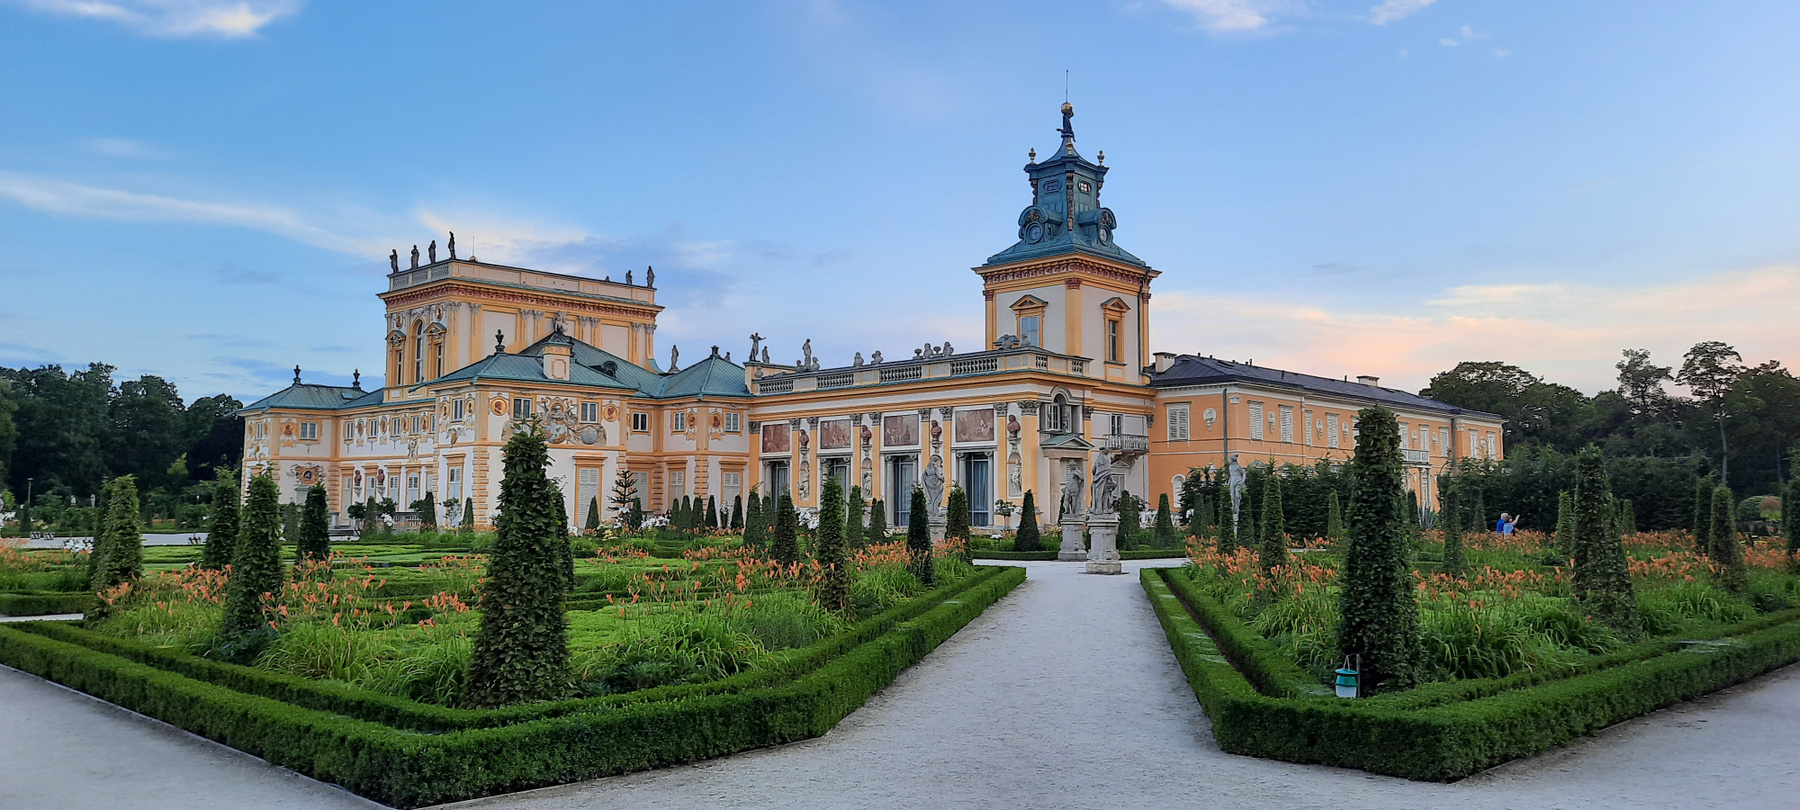 Вилянувский дворец Польша Варшава дворец